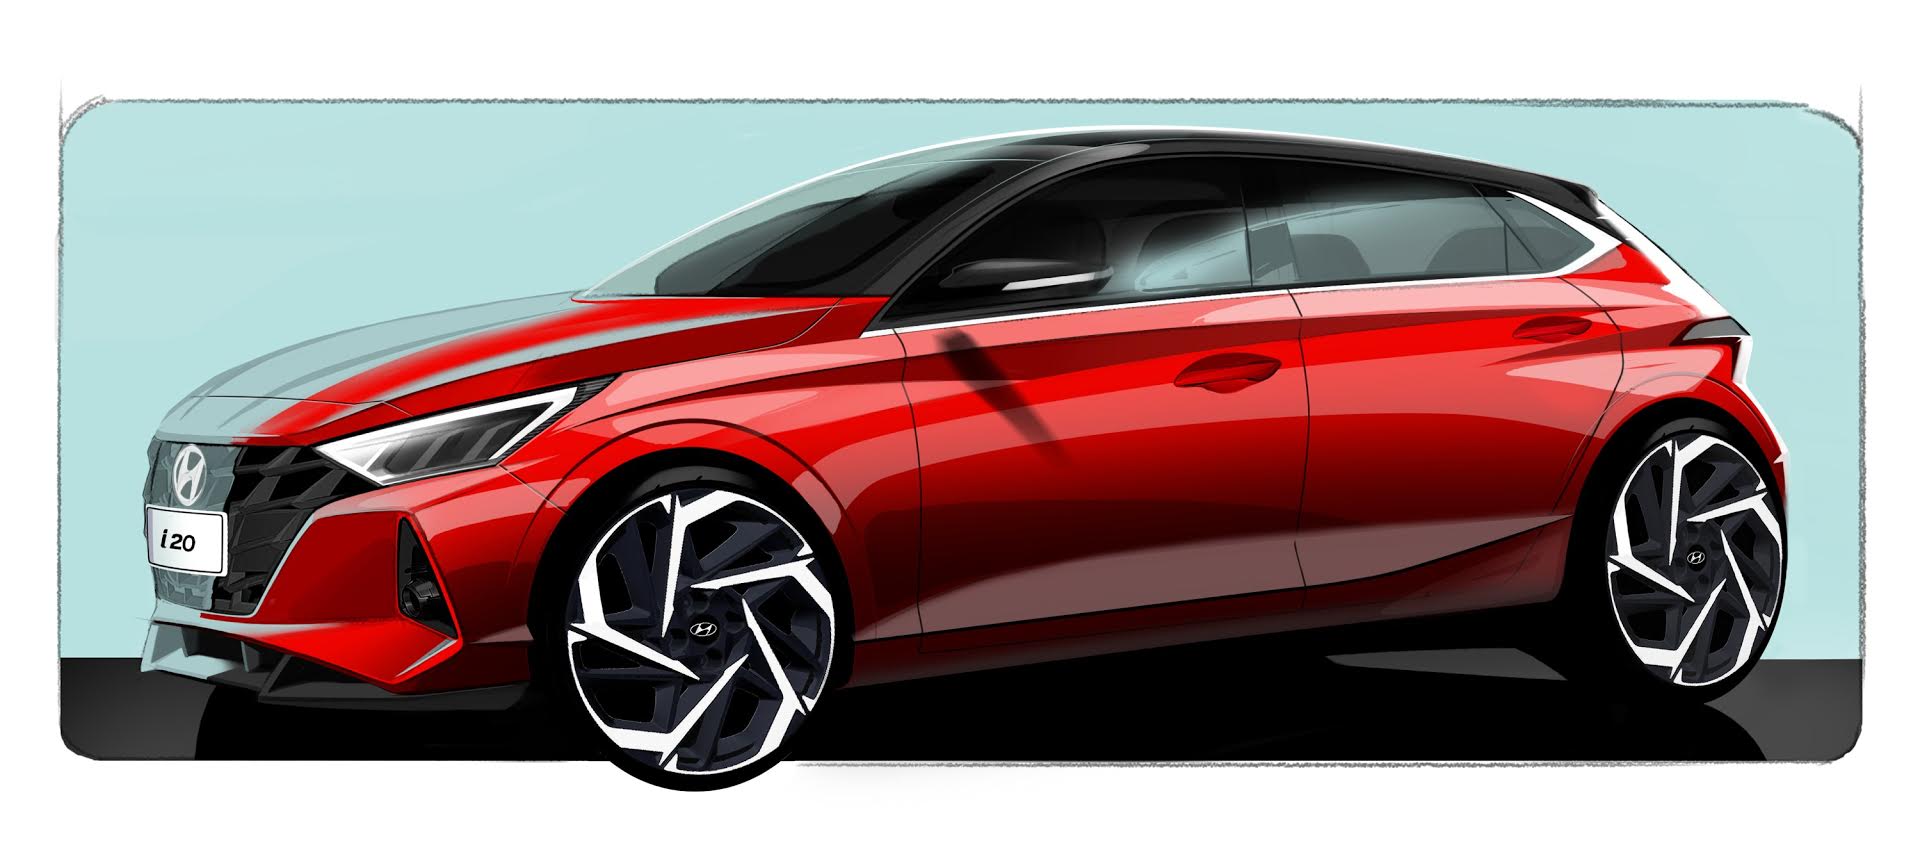 Yeni Hyundai i20'nin ilk çizimleri paylaşıldı